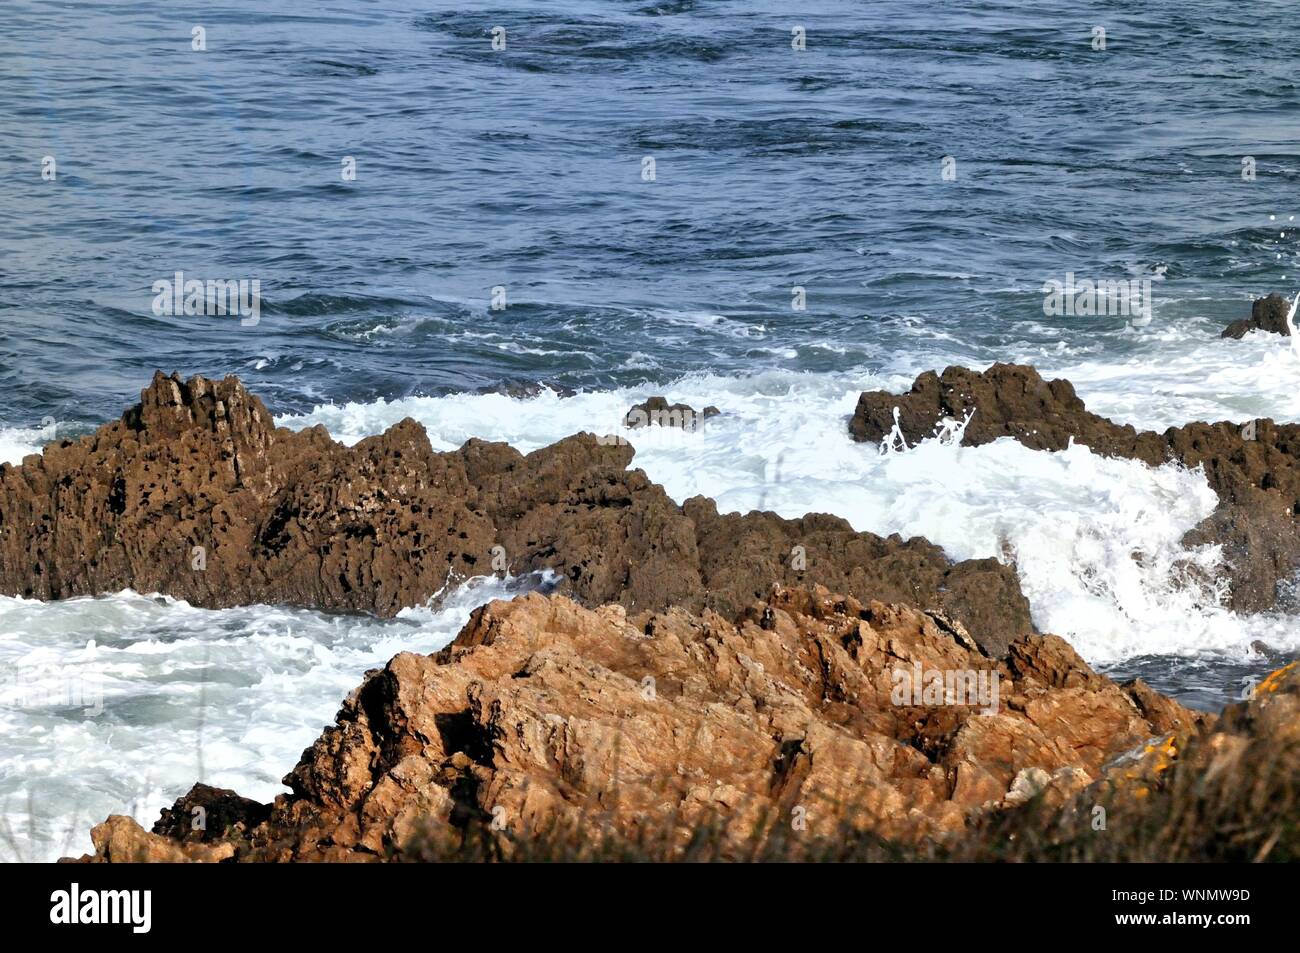 Les vagues de l'océan Atlantique de frapper la côte française de roches et formant des tourbillons dans une atmosphère pacifique mais puissant appelant à la liberté et l'infini. Banque D'Images